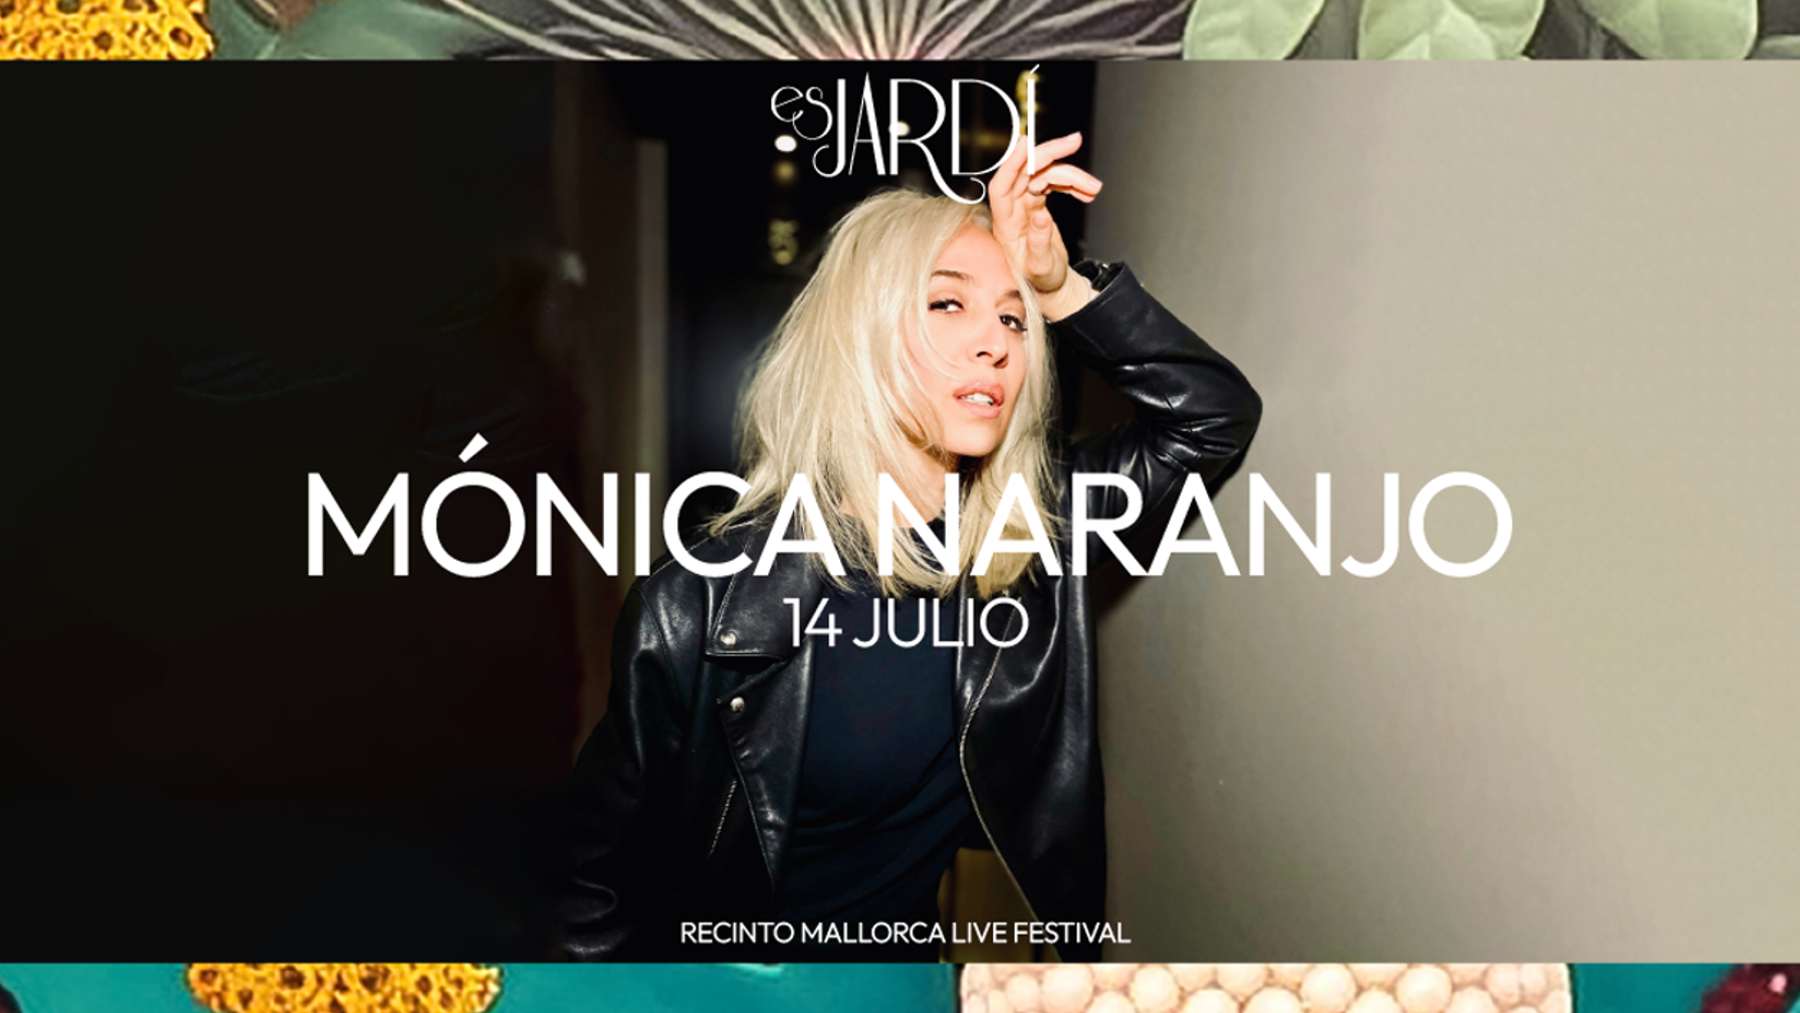 Mónica Naranjo actuará en Es Jardí este viernes 14 de julio.